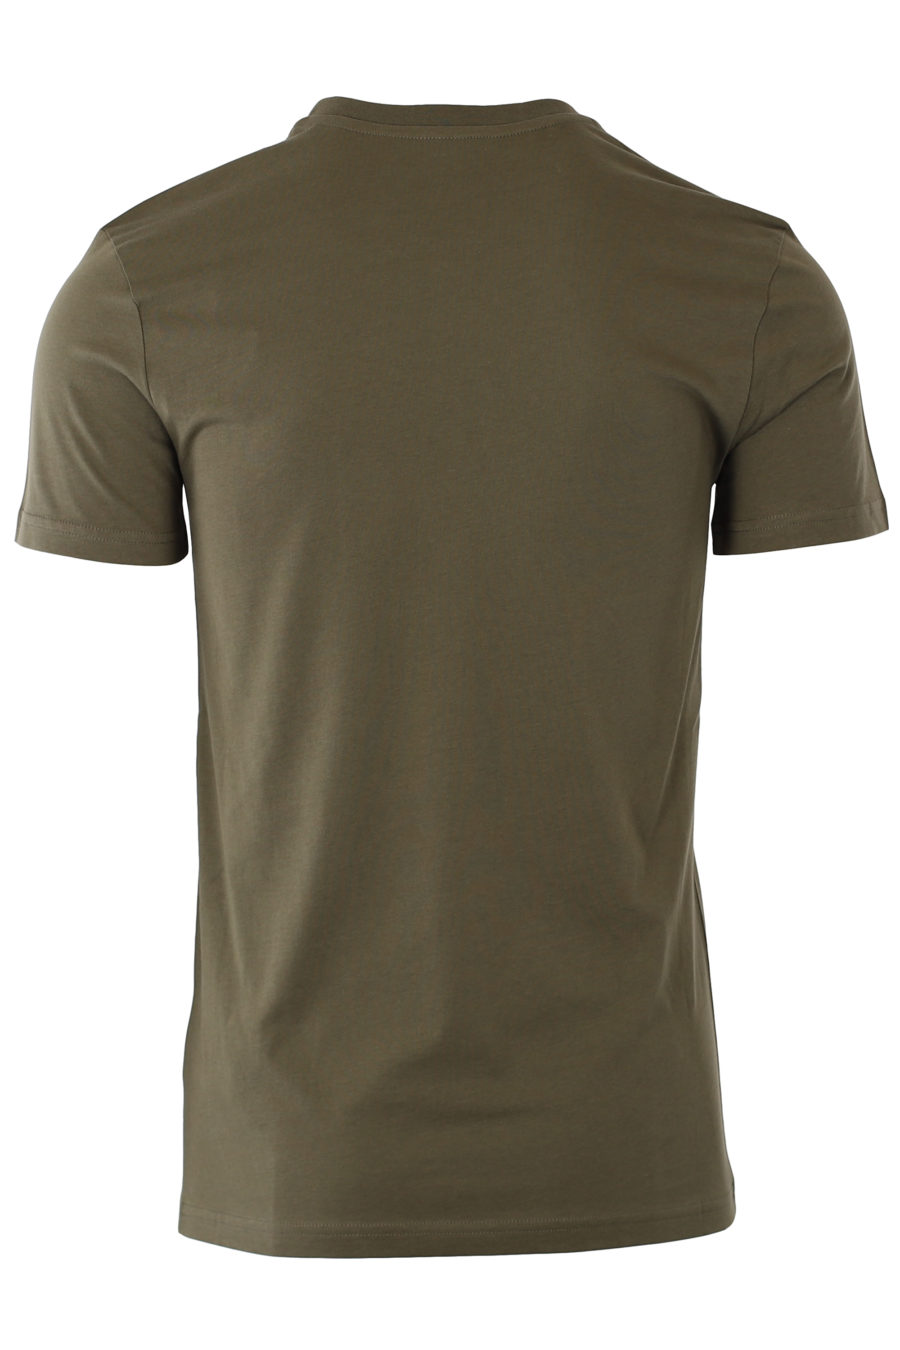 T-shirt verde militar com logótipo "fantasy" preto - IMG 9322